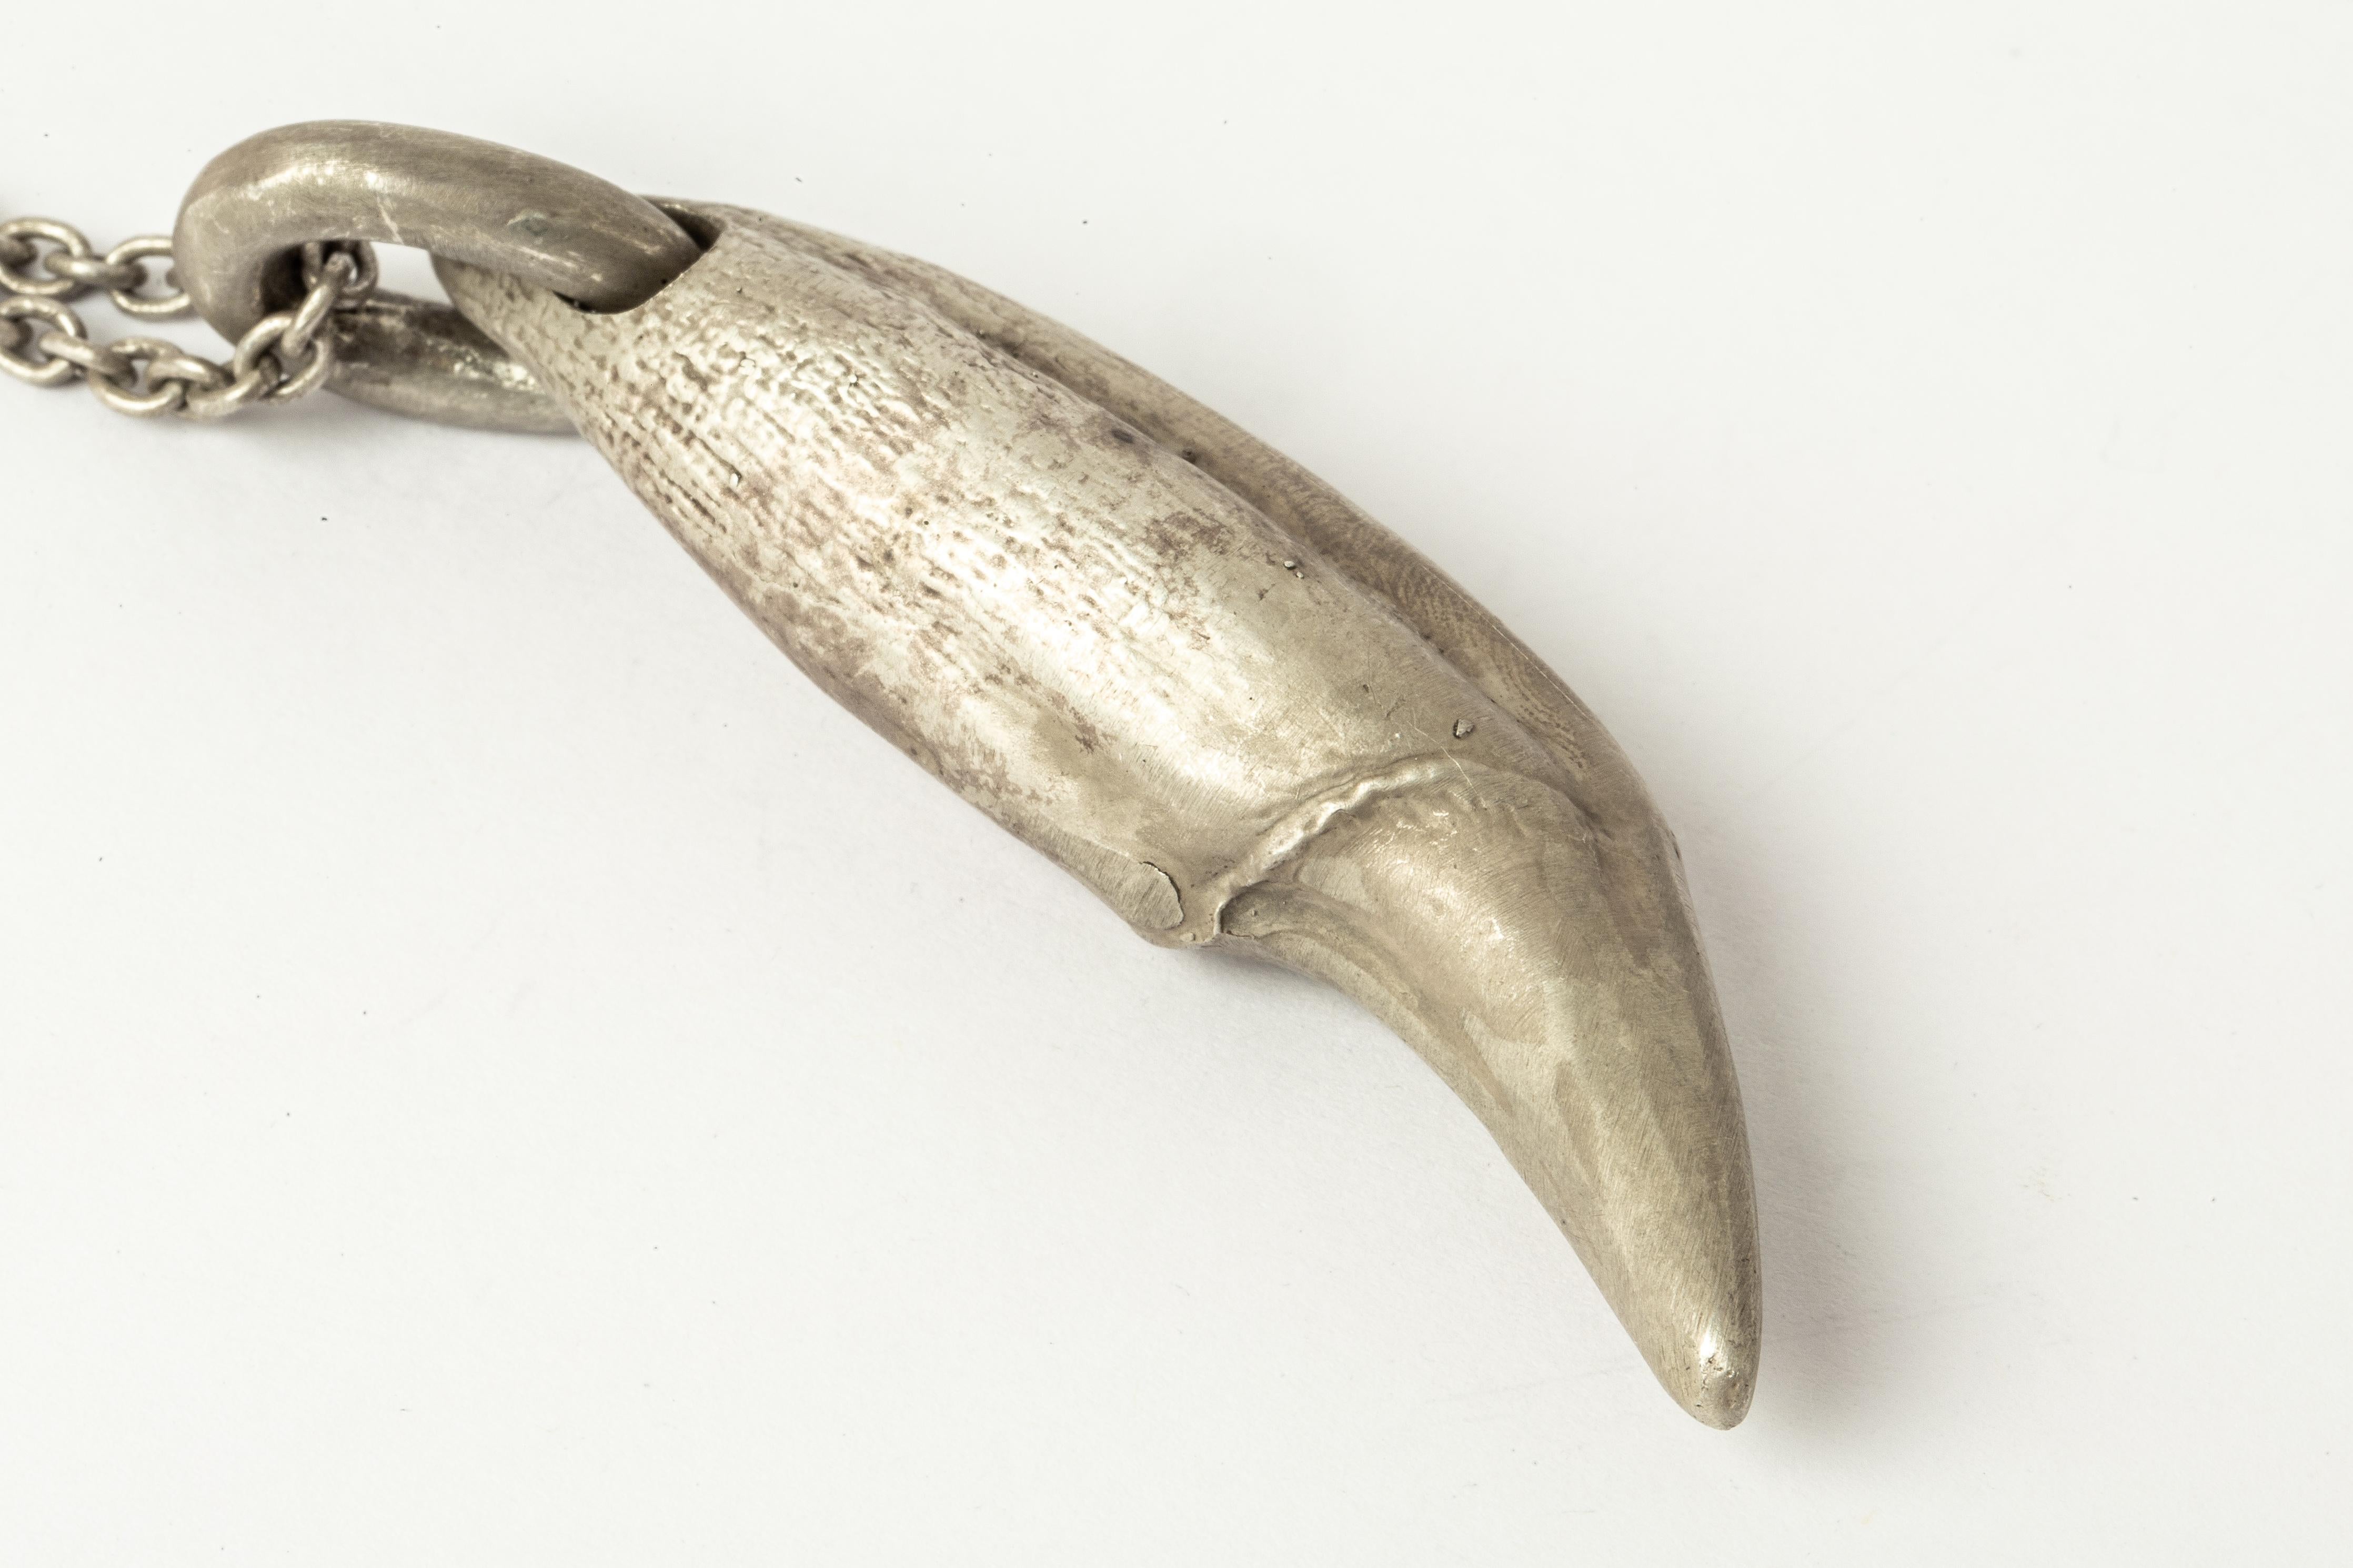 Collier pendentif en forme de dent d'ours en argent sterling traité à l'acide, monté sur une chaîne de 74 cm. Cet objet est fabriqué dans le plus grand respect de la magie de l'animal auquel il fait référence et espère servir d'outil magique dans la